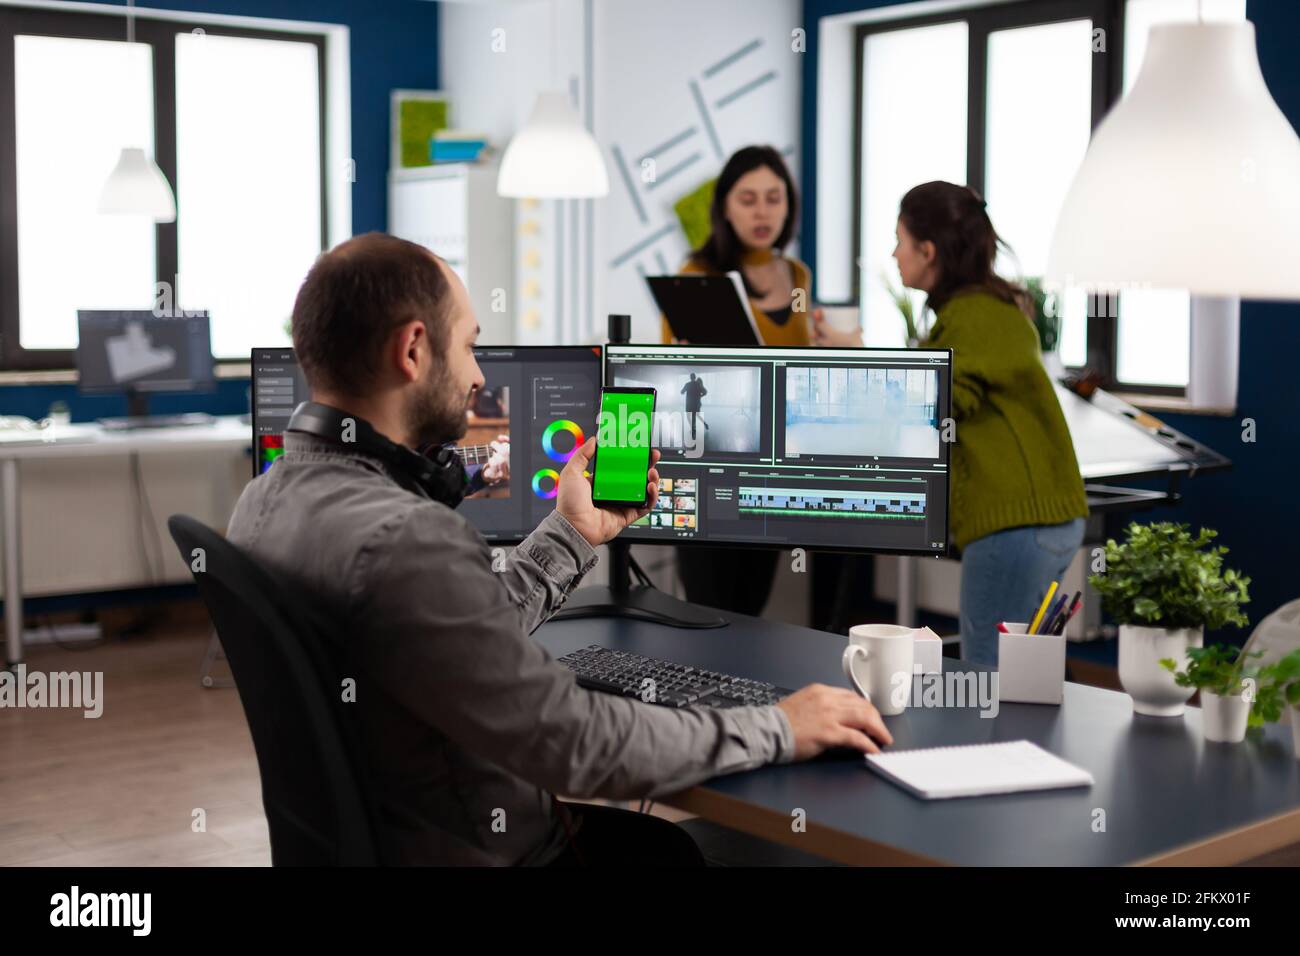 Bạn muốn tạo ra các video đẹp mắt chỉ với chiếc điện thoại thông minh của mình? Green screen video editing chính là giải pháp cho bạn! Với cái giá phải chăng, bạn có thể chỉnh sửa những đoạn video đẹp lung linh với các hiệu ứng màu sắc đầy sáng tạo. Xem ngay hình ảnh để biết thêm chi tiết! Translation: \